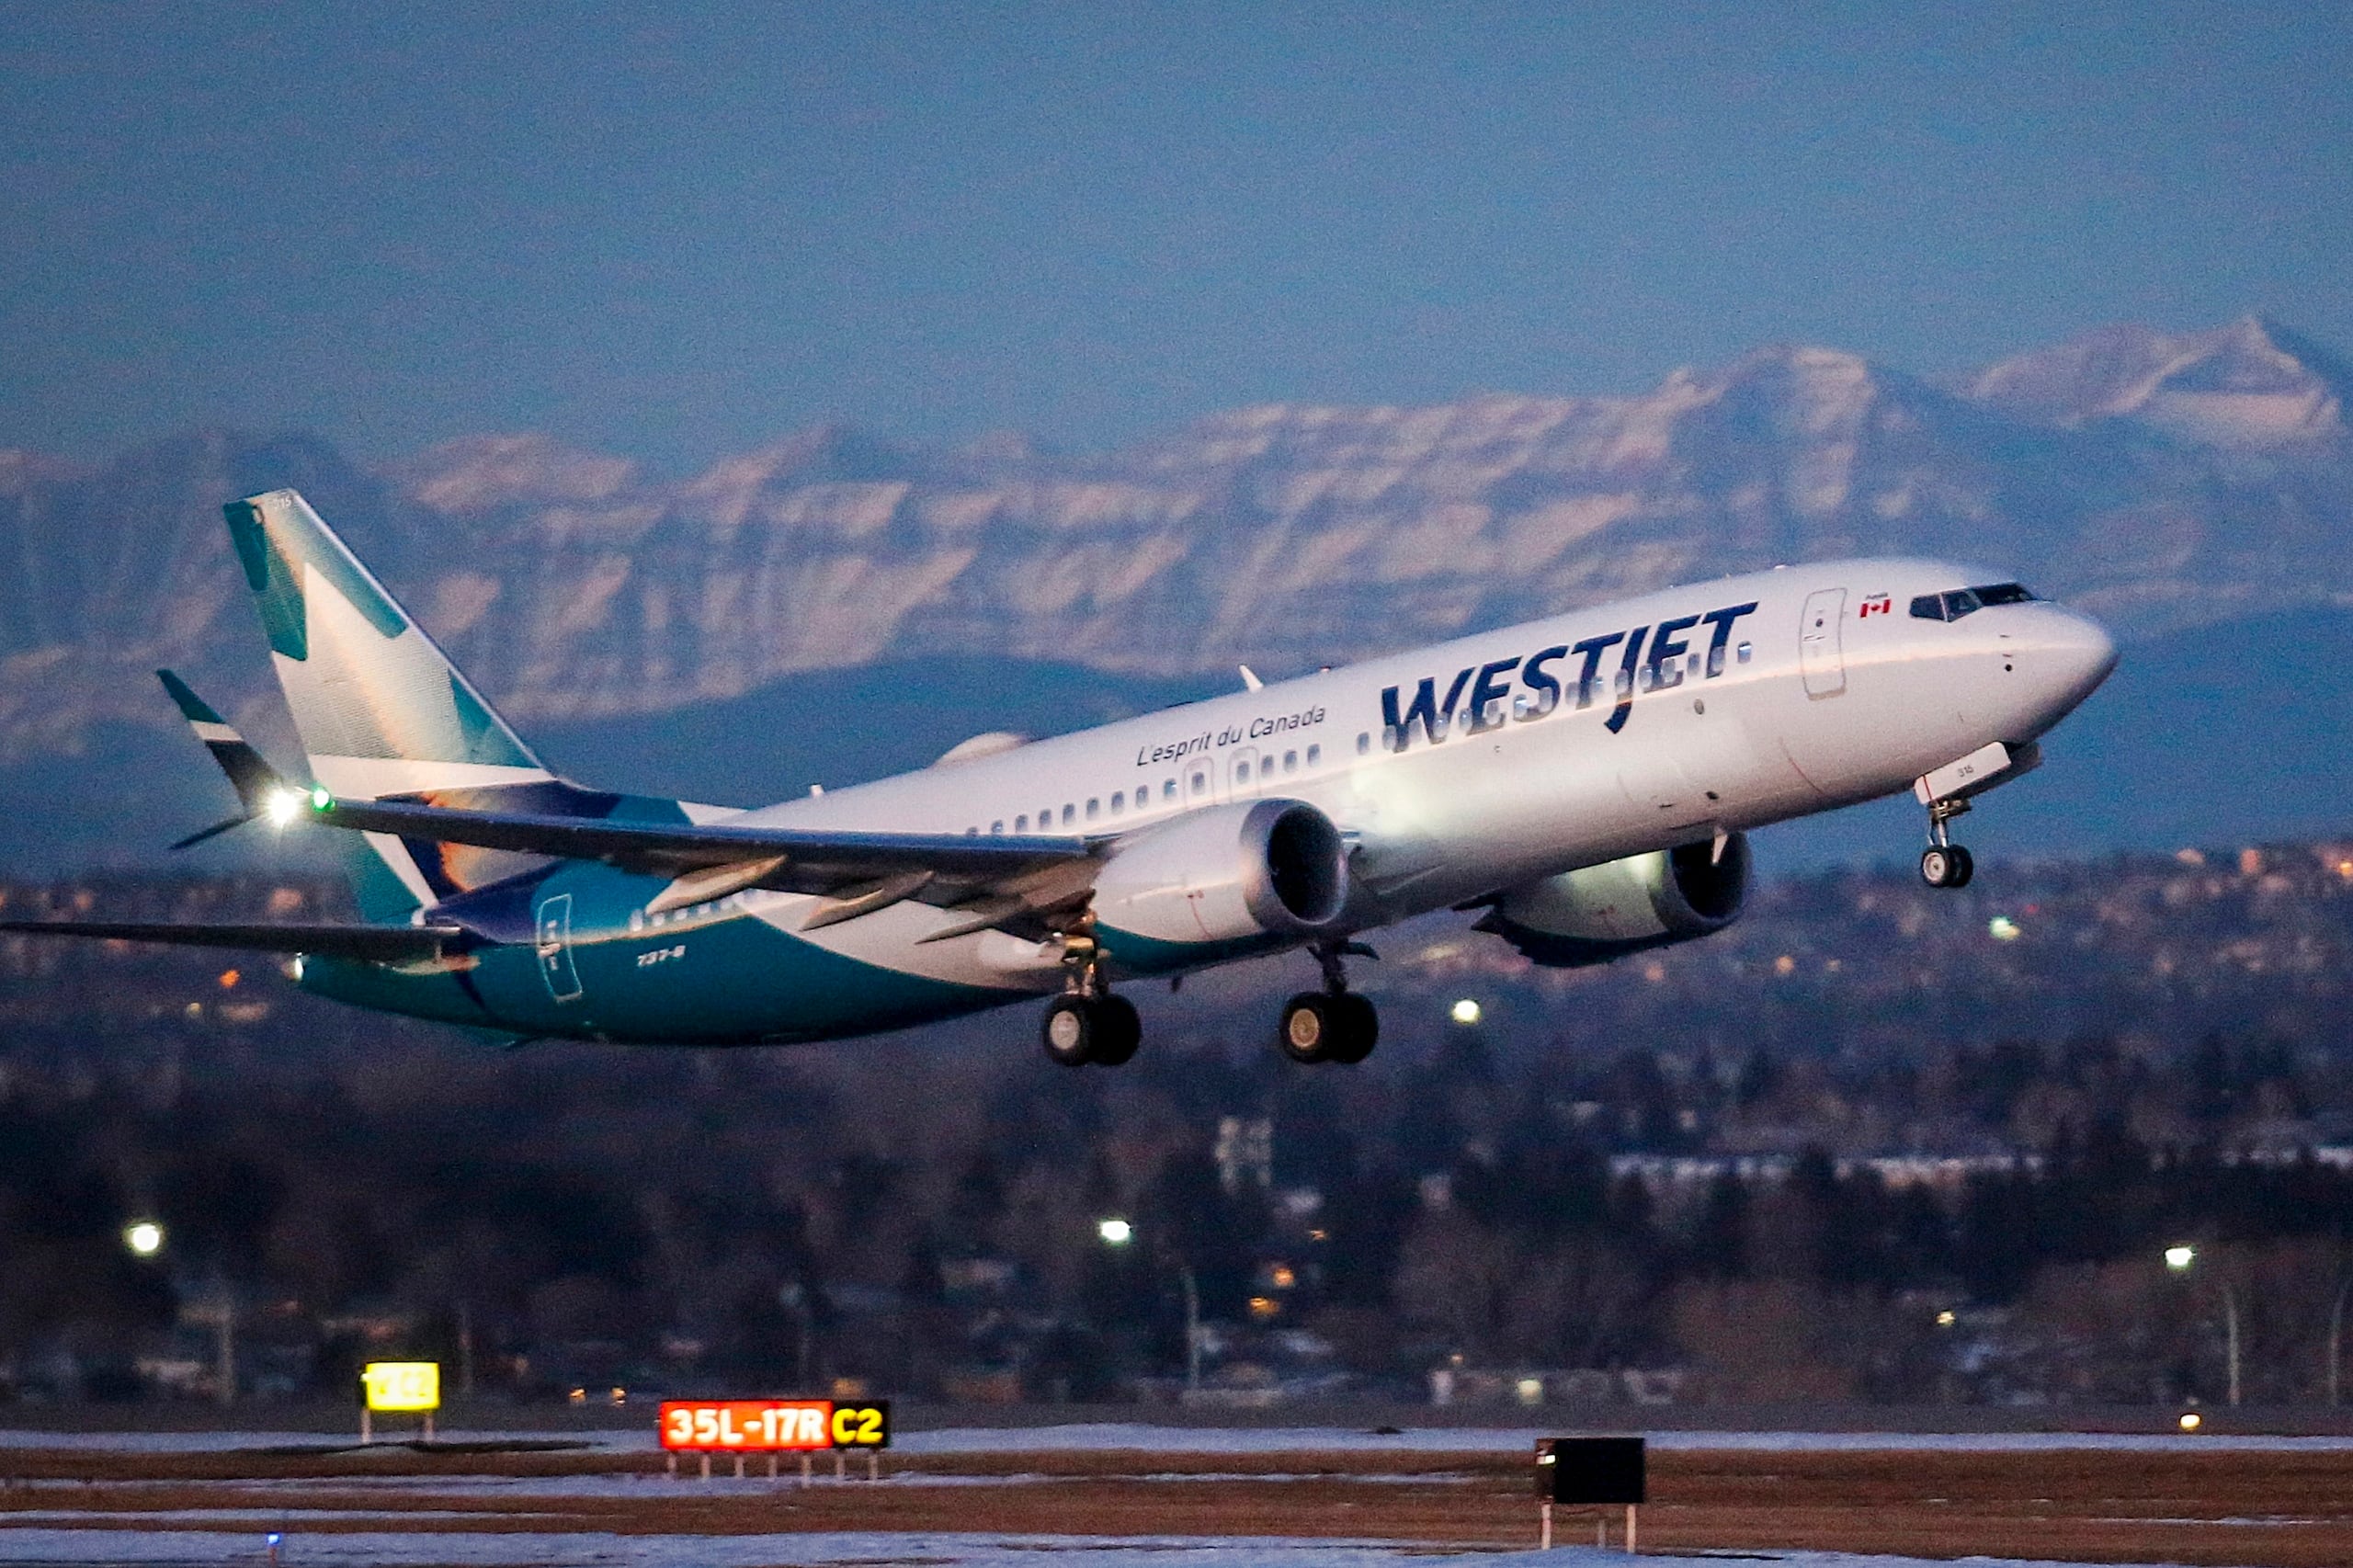 Un avión de WestJet despega en Calgary, Alberta, el 21 de enero de 2021. Mecánicos de la compañía aérea canadiense WestJet  iniciaron una huelga, que provocó la cancelación de 407 vuelos. (Jeff McIntosh/The Canadian Press via AP, Archivo)